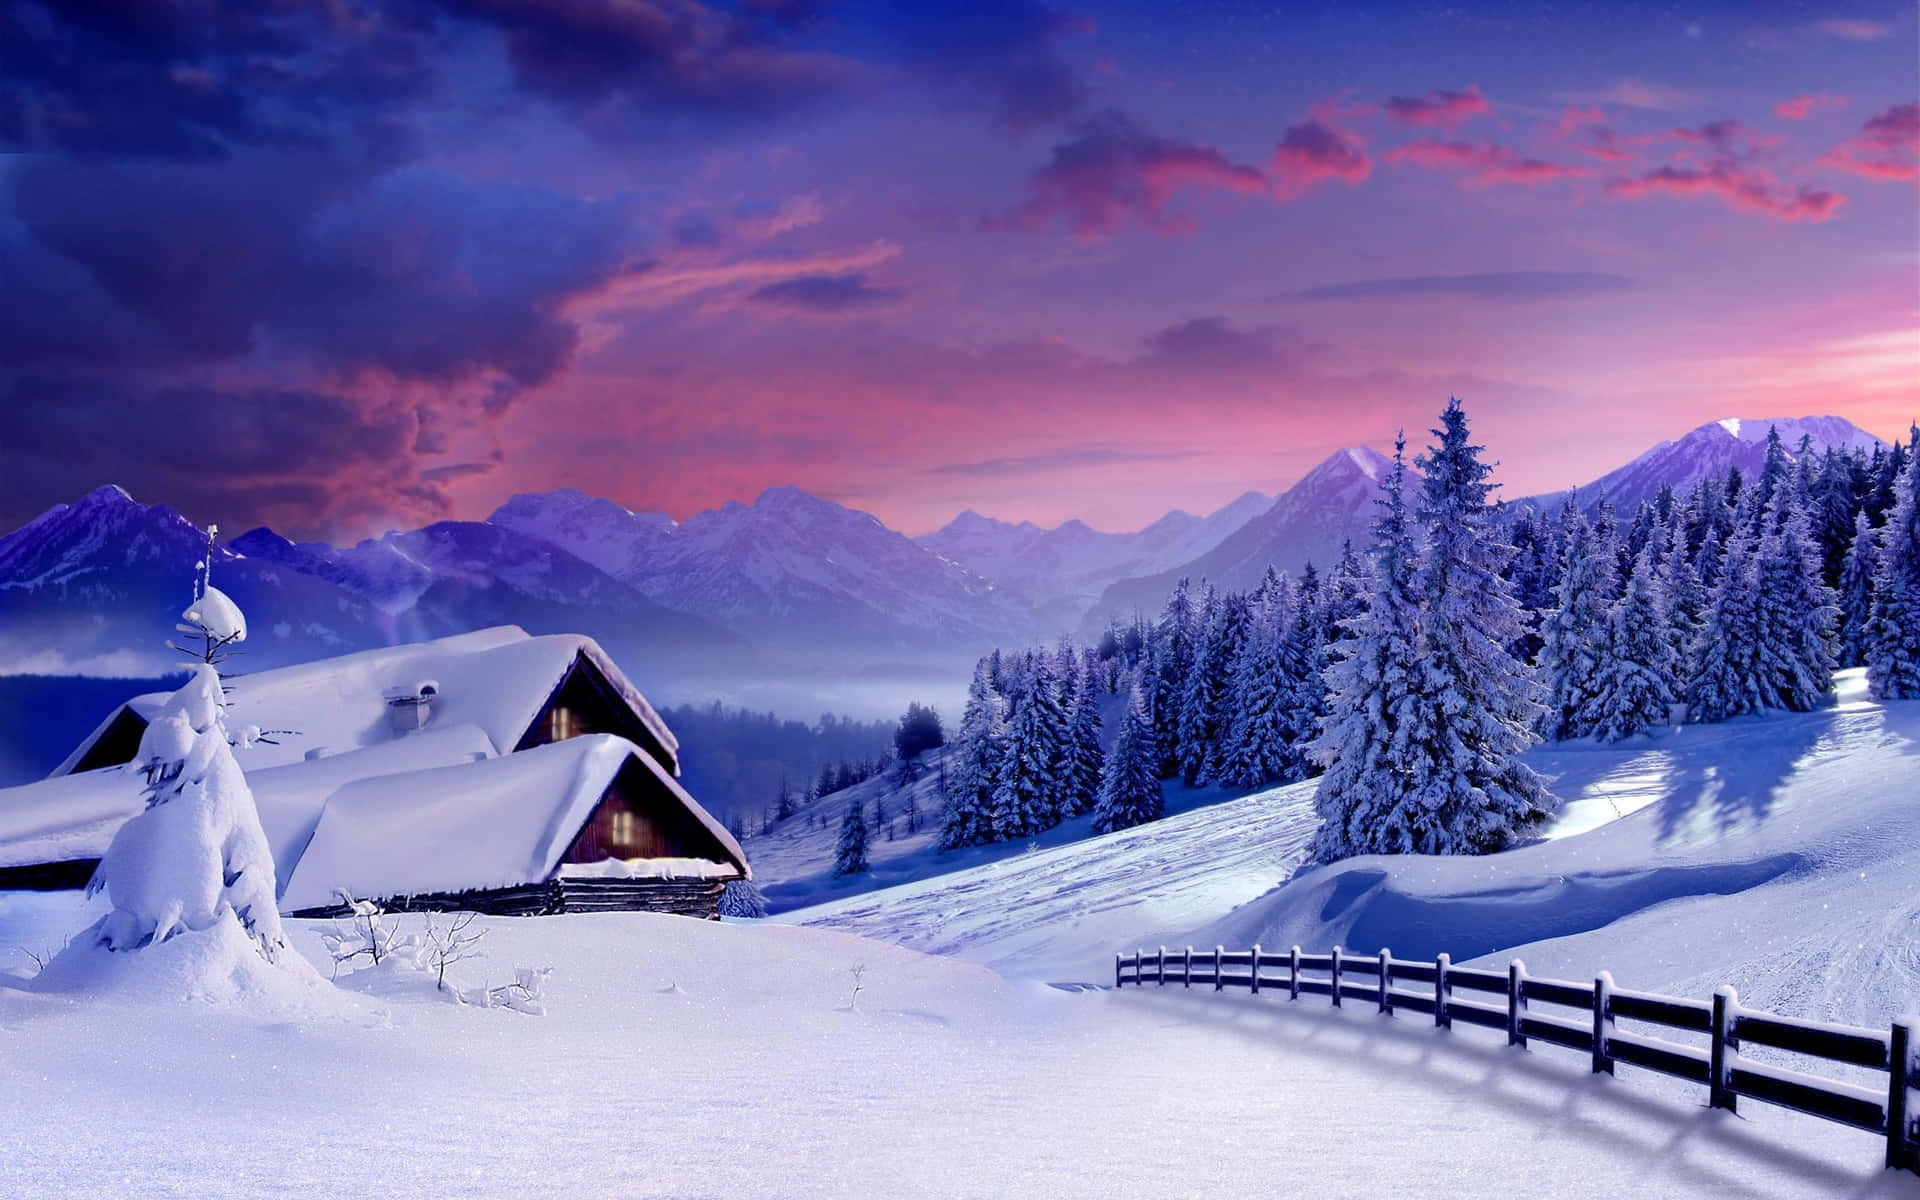 Winter Wonderland | Cozy Snowy Village